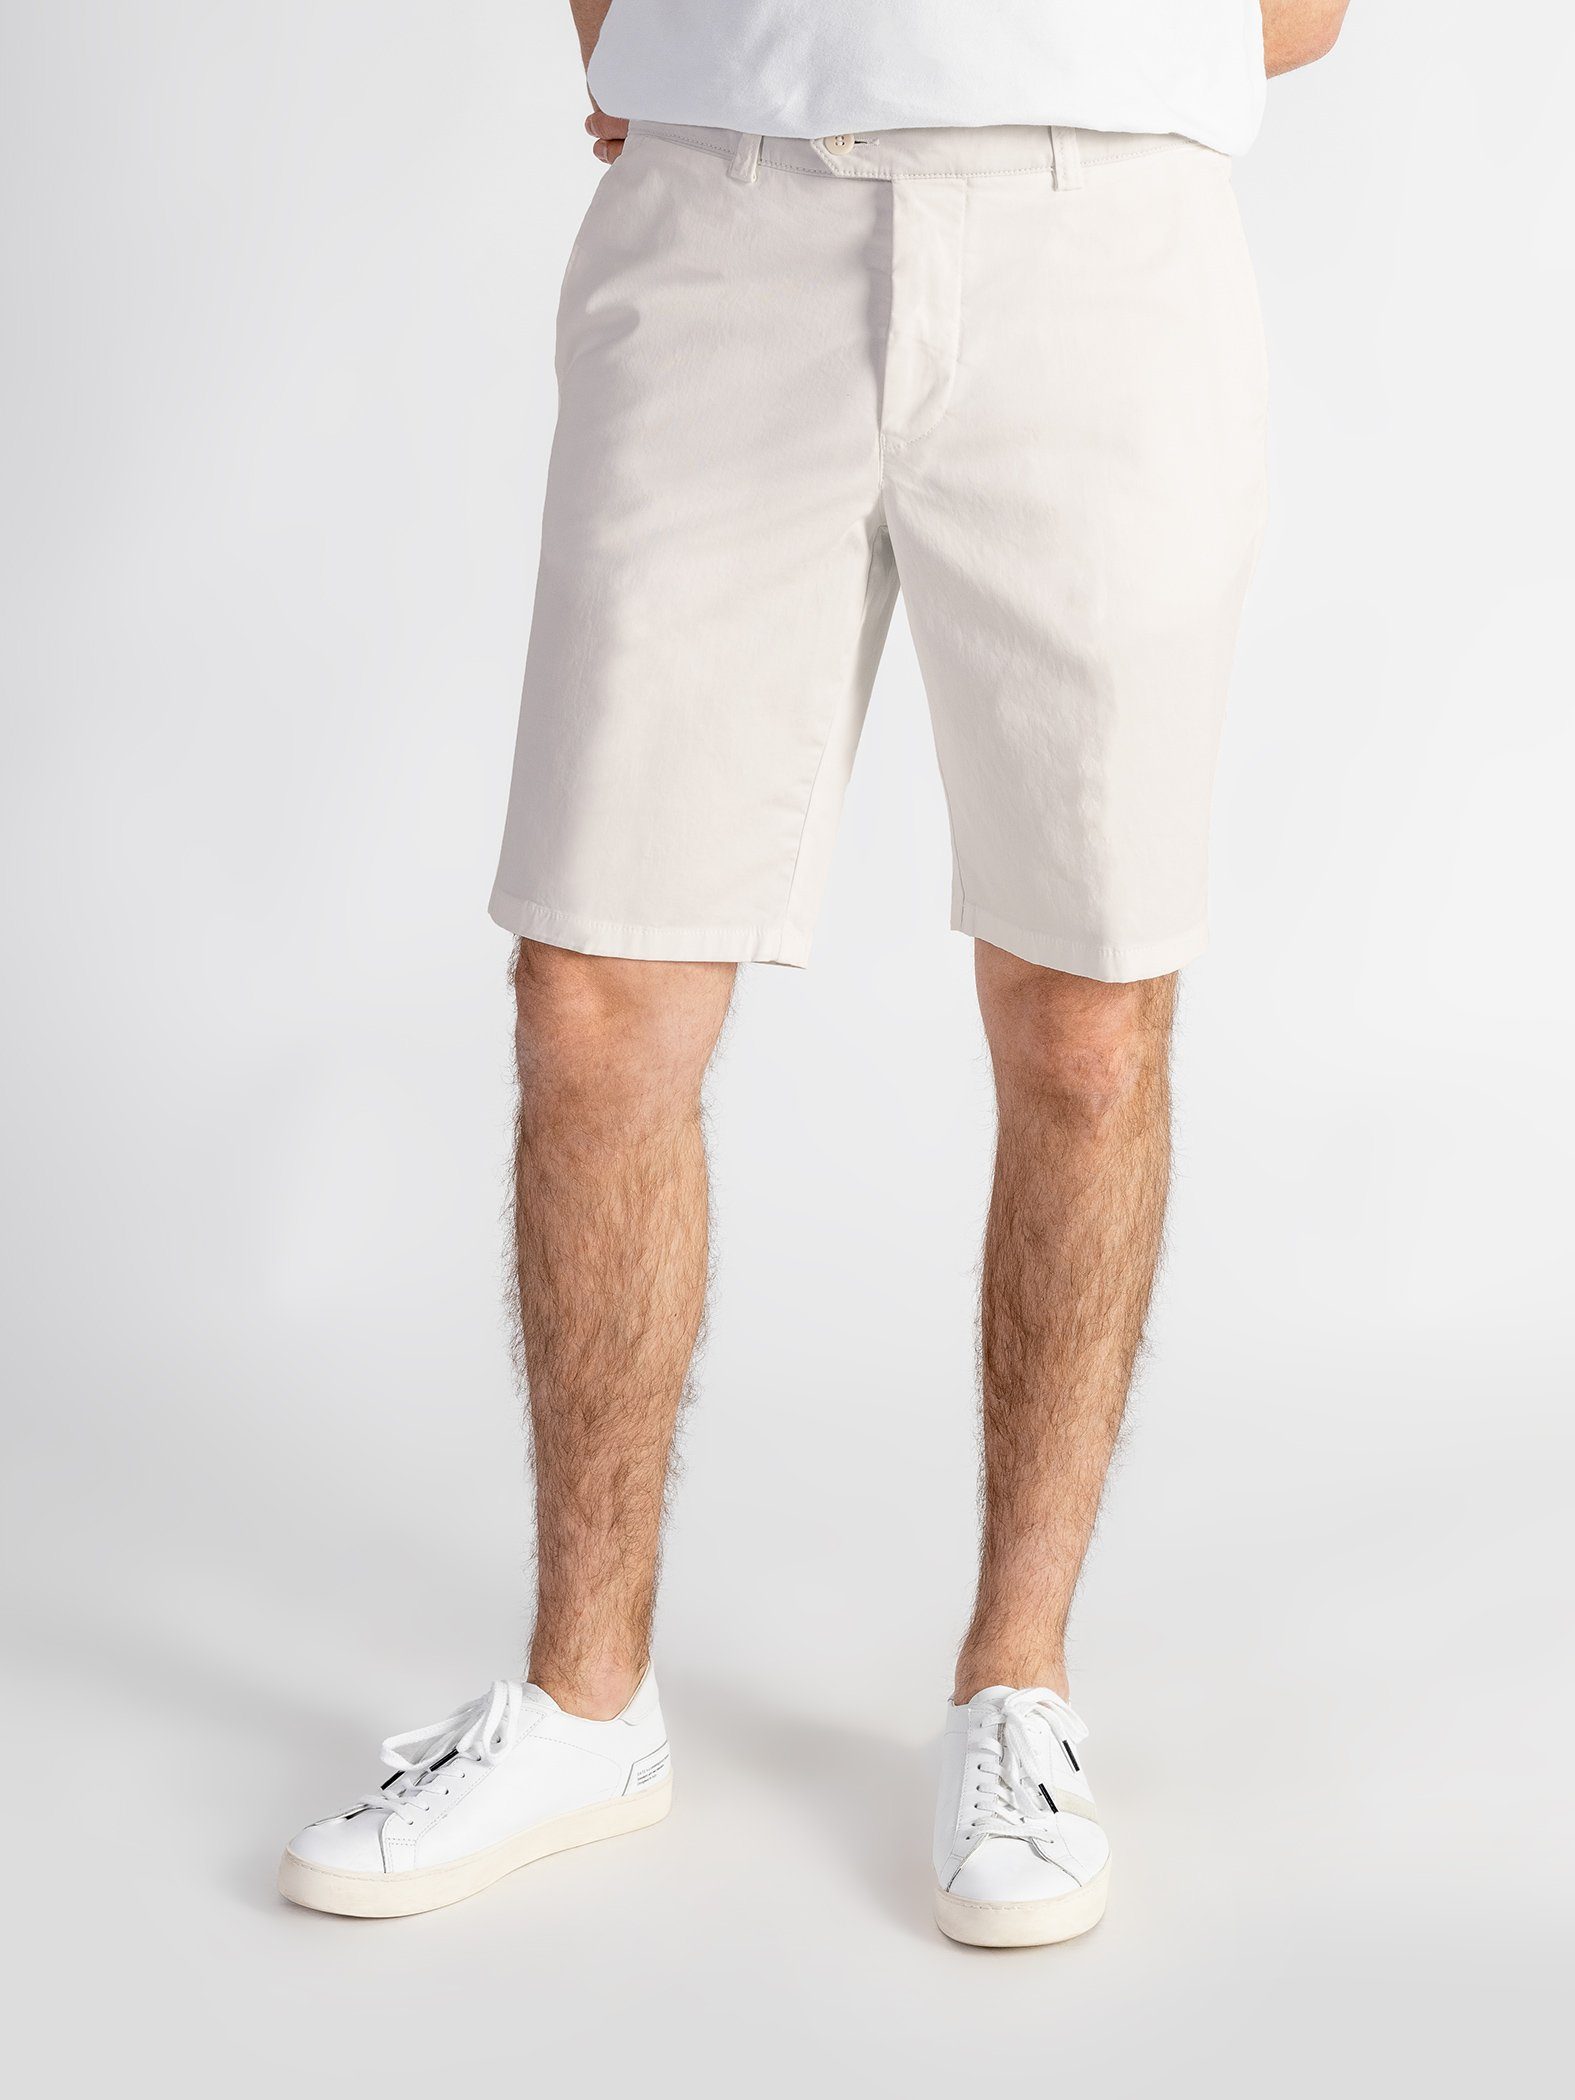 Shorts mit elastischem hellbeige Shorts TwoMates Bund, Farbauswahl, GOTS-zertifiziert